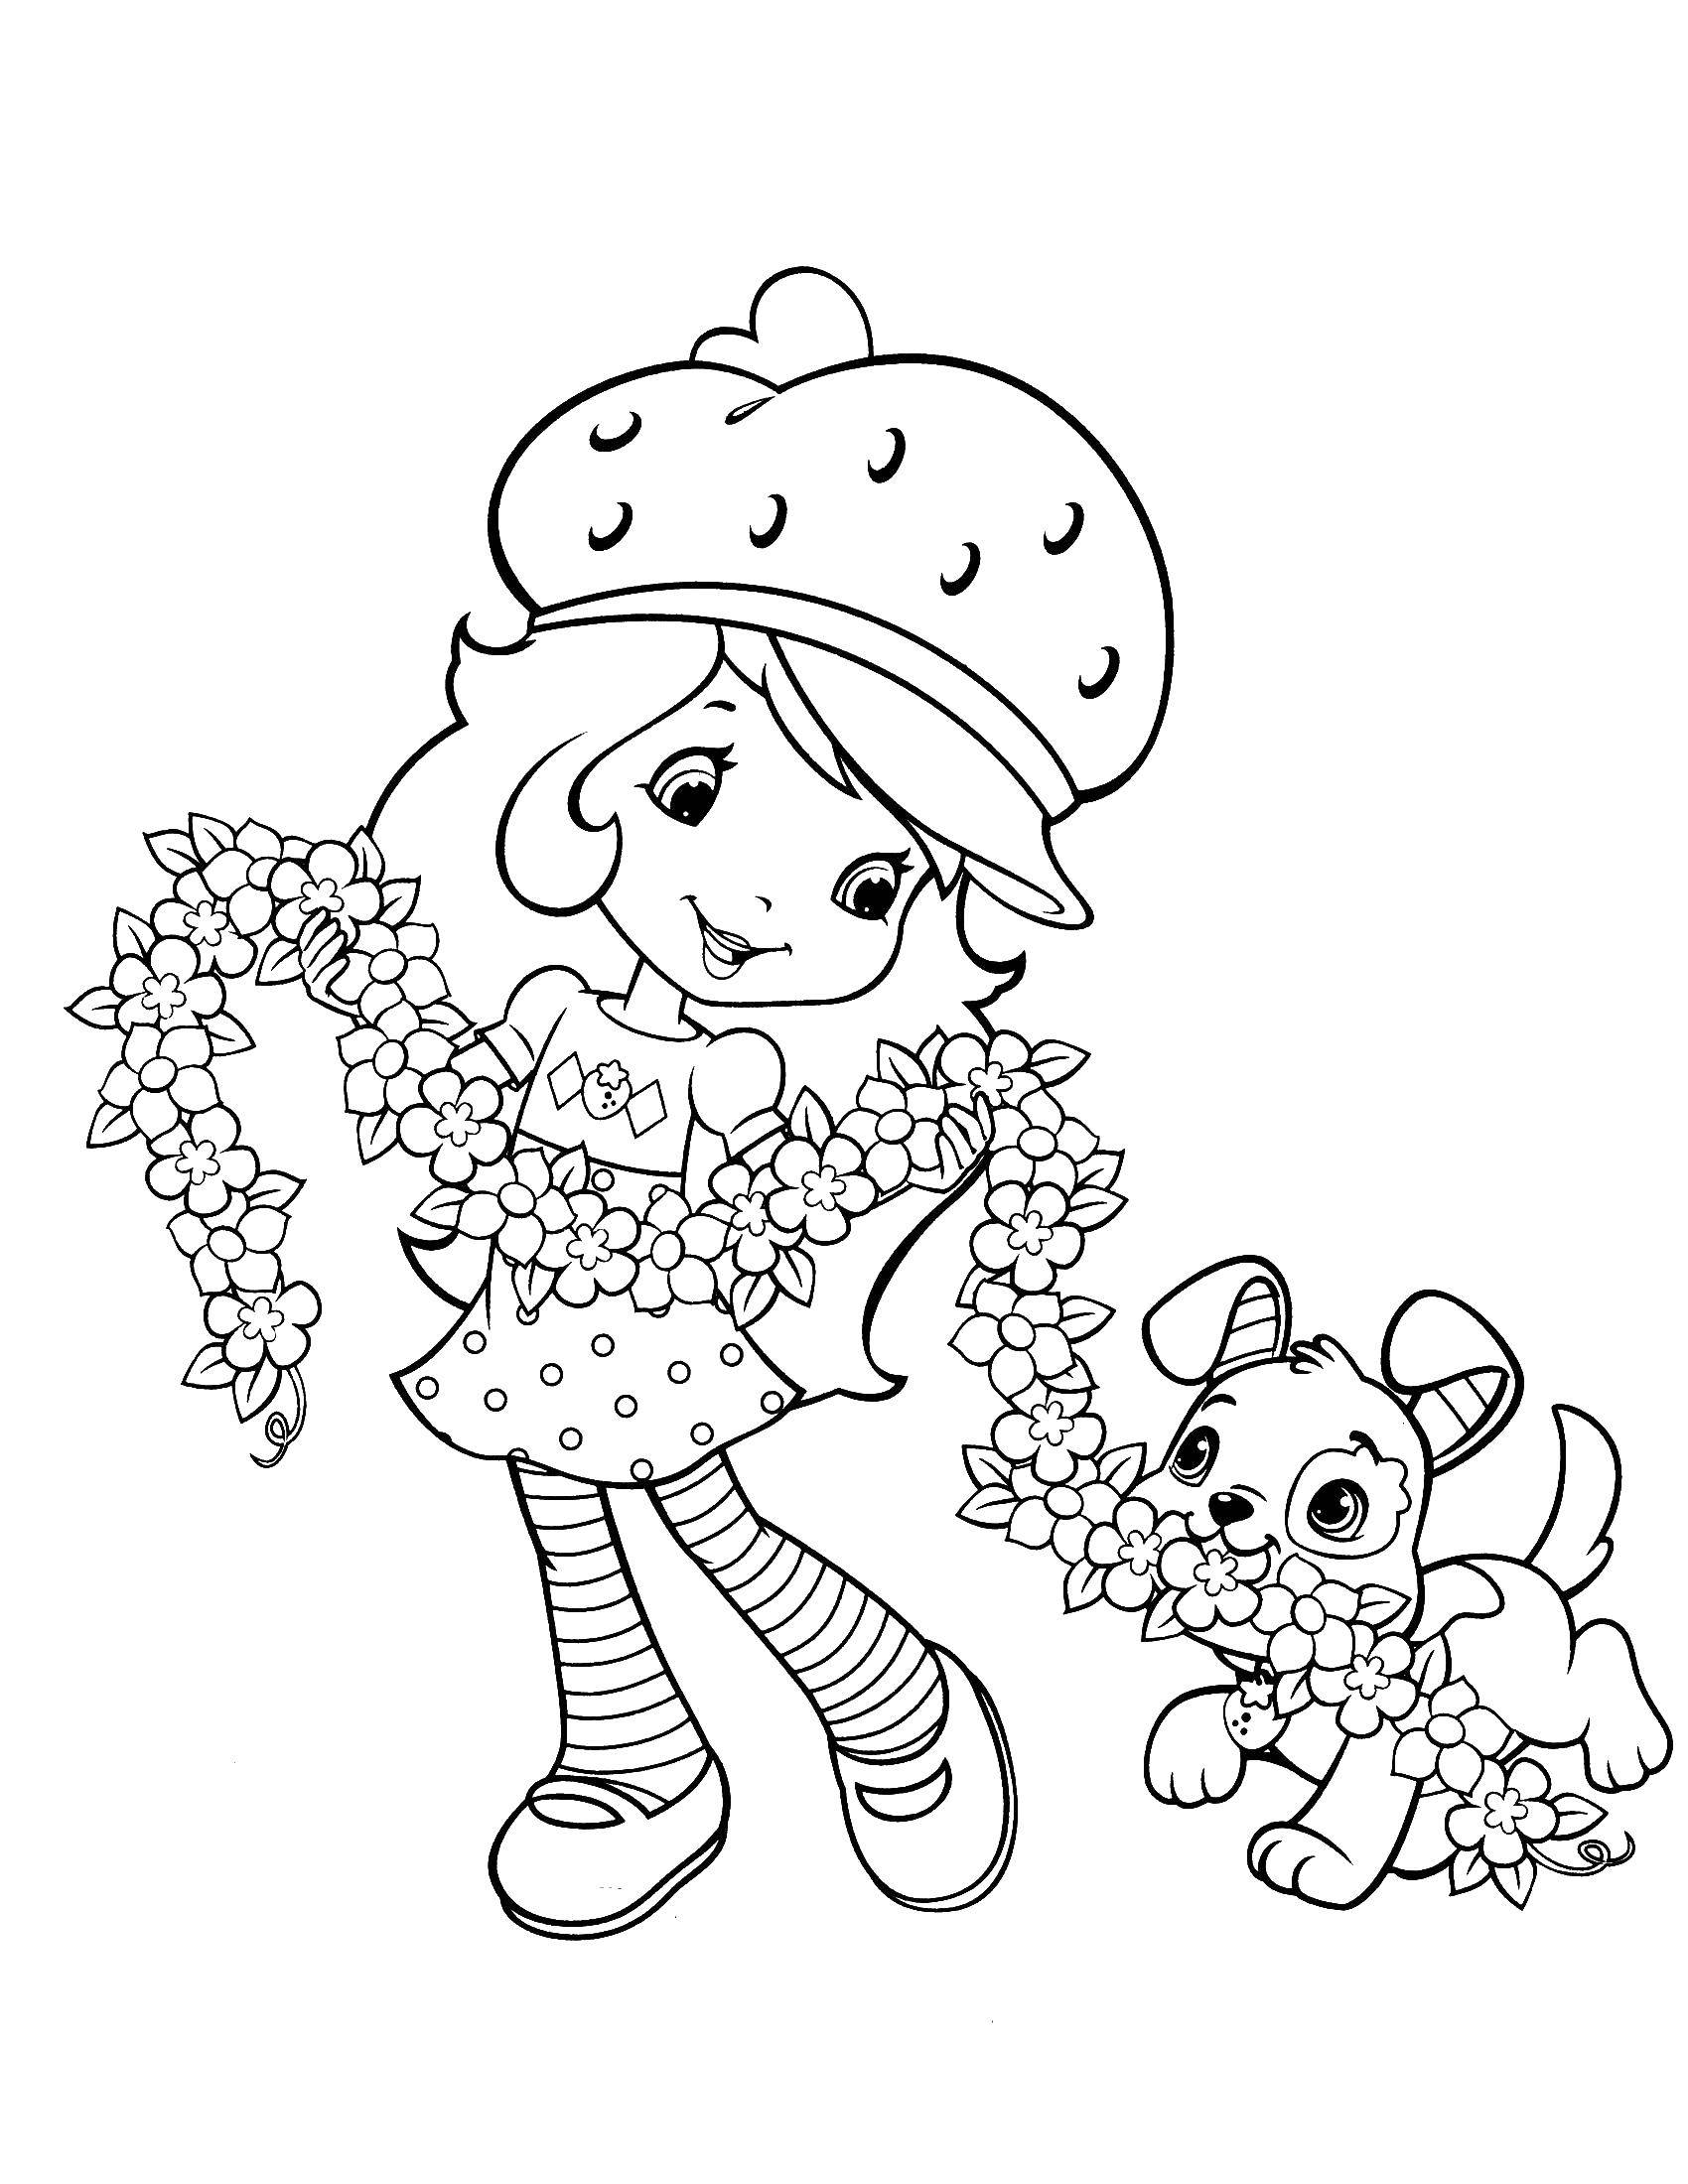 Название: Раскраска Красивая девочка в шляпе, со связкой цветов в руках играет со своей собачкой. Категория: раскраски для девочек. Теги: девочка, кукла, барби, цветы, собачка.